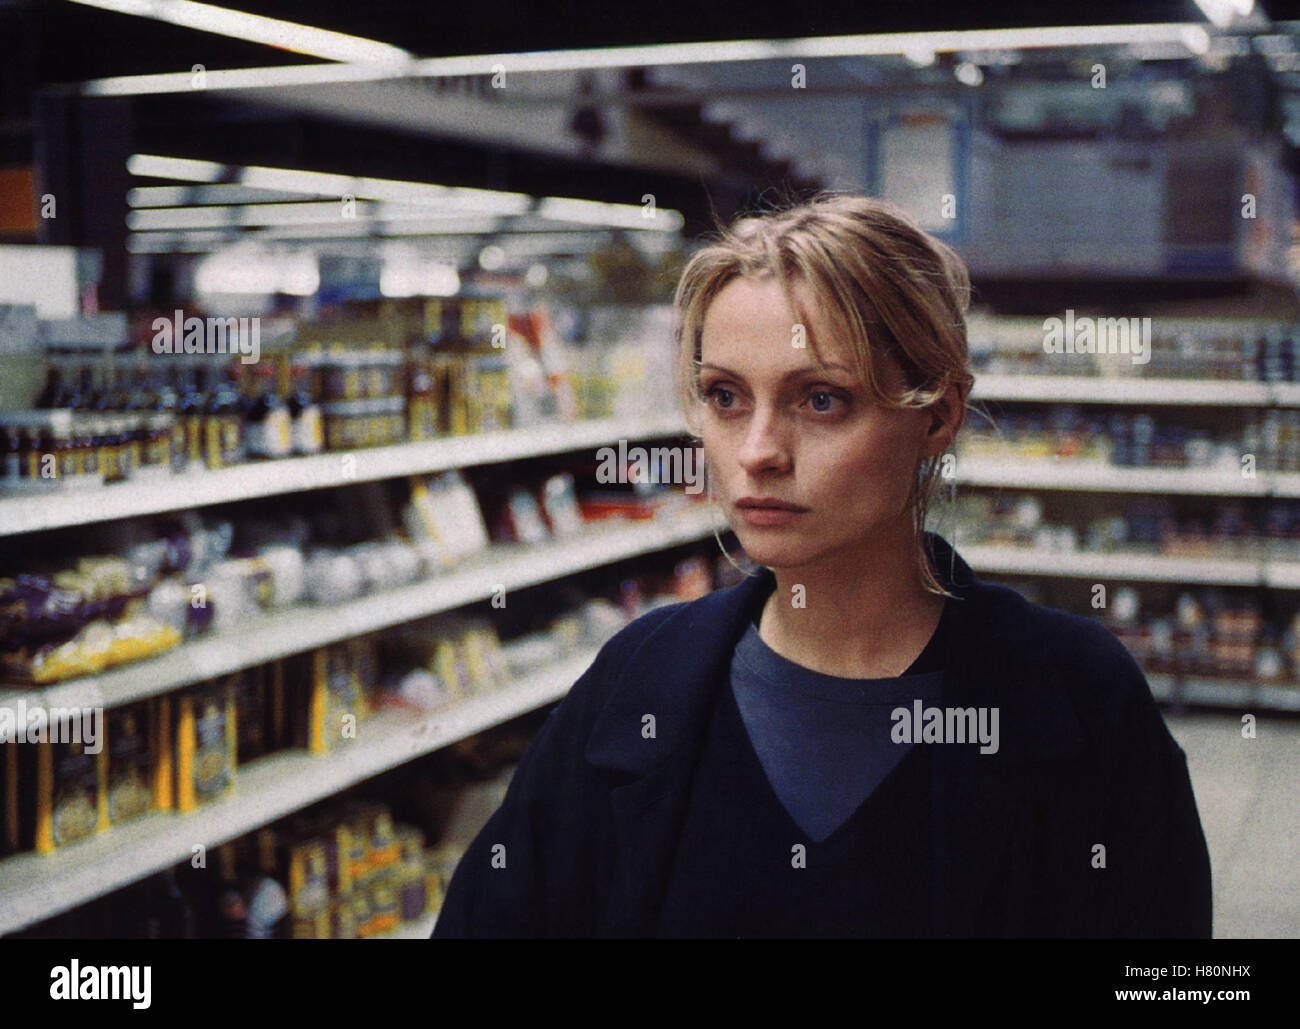 Hunger - Sehnsucht Nach Liebe, (HUNGER - SEHNSUCHT NACH LIEBE) D 1997, Regie: Dana Vavrova, CATHERINE FLEMMING, Stichwort: Supermarkt, Einkaufen Stockfoto